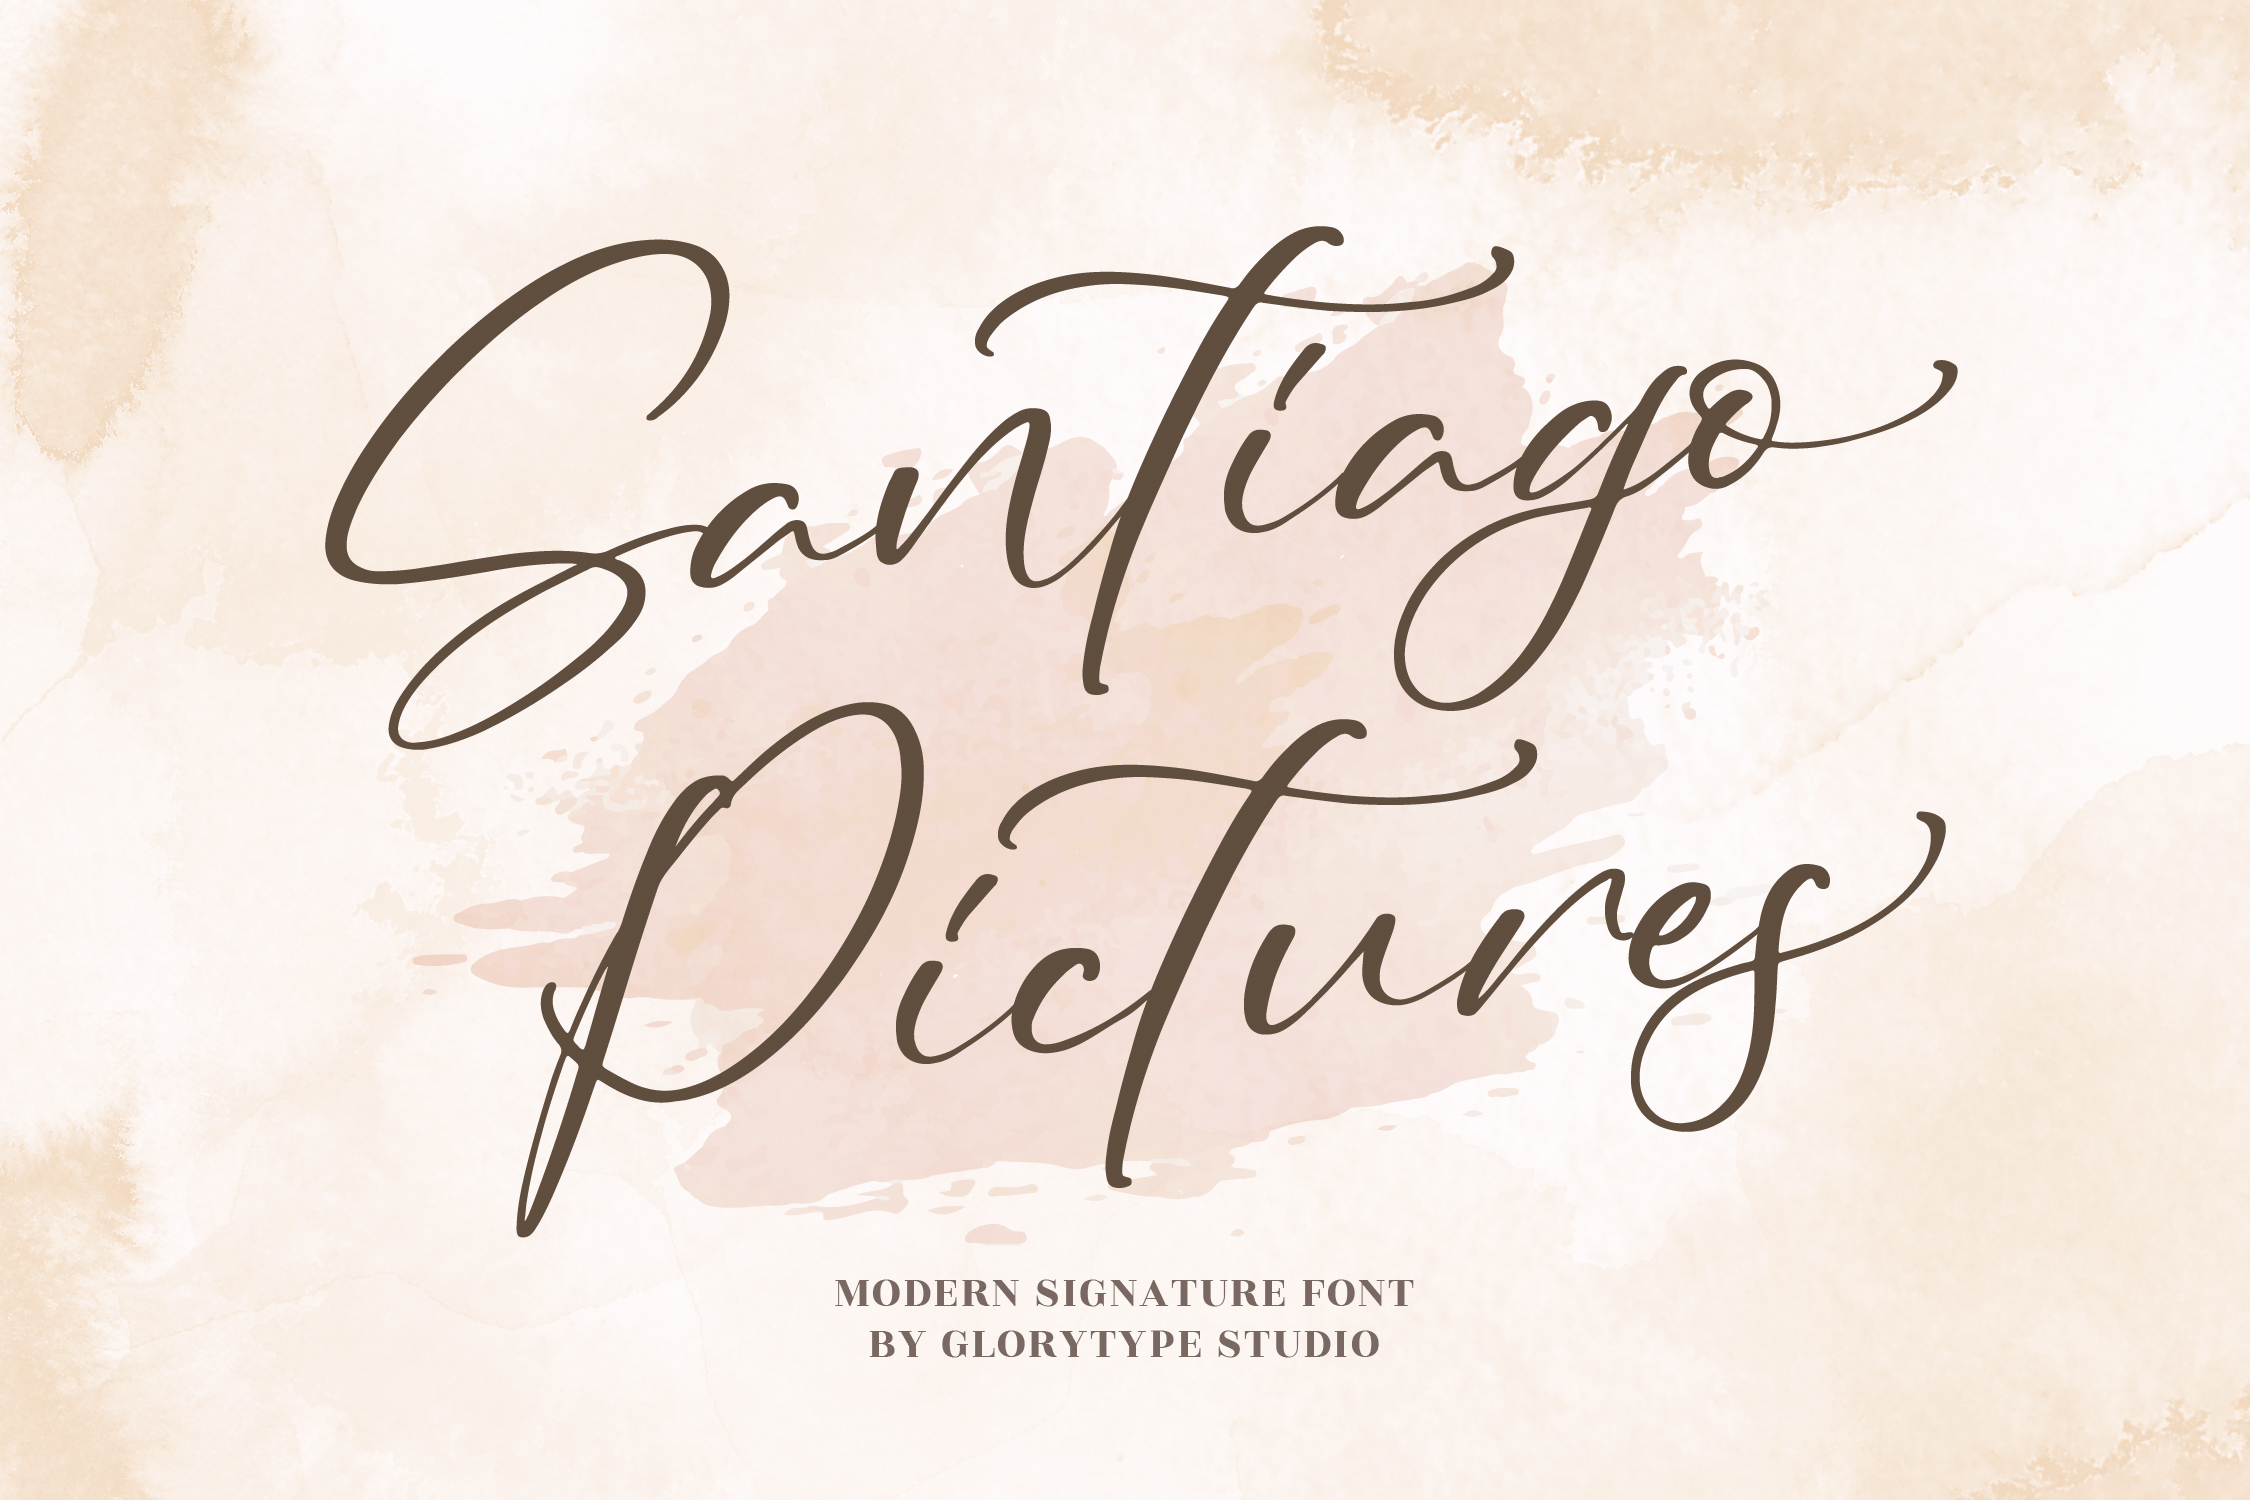 Santiago Pictures